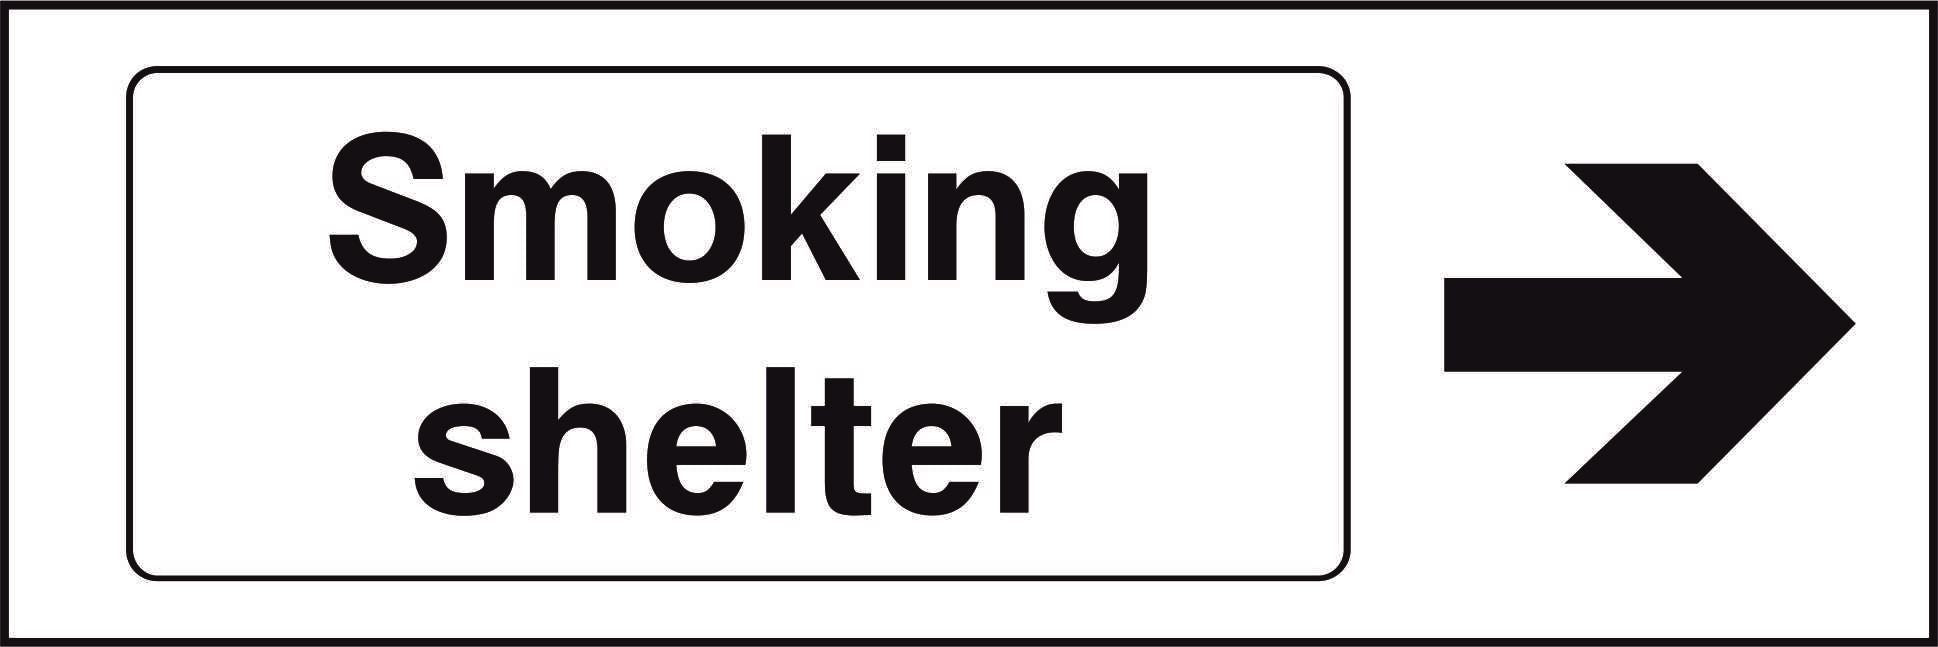 Smoking shelter